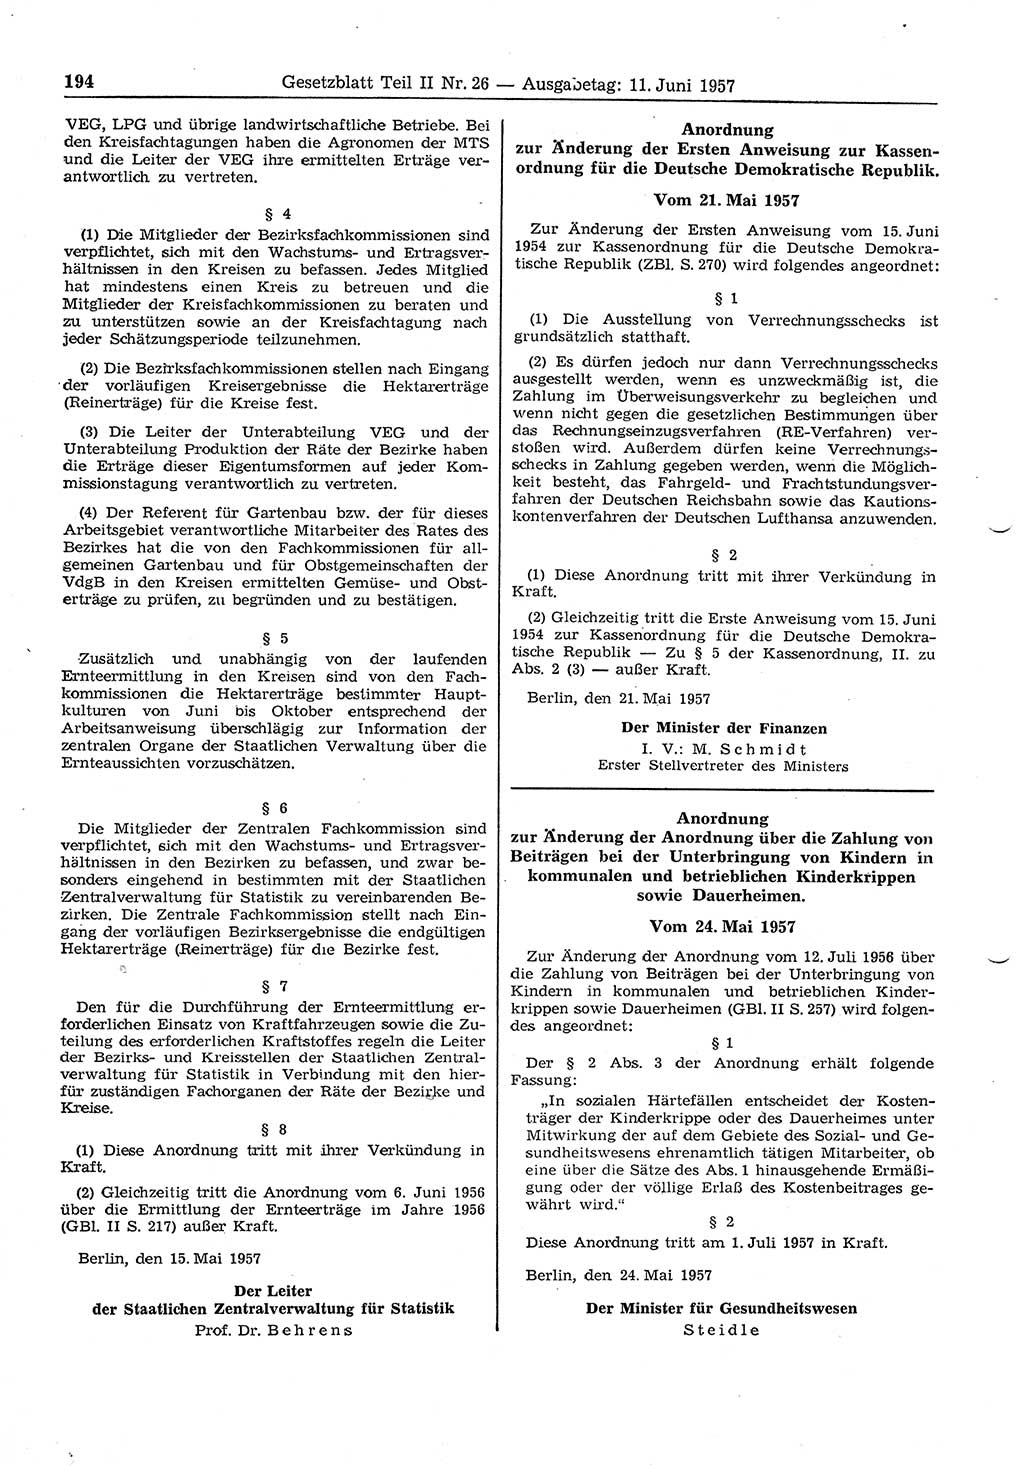 Gesetzblatt (GBl.) der Deutschen Demokratischen Republik (DDR) Teil ⅠⅠ 1957, Seite 194 (GBl. DDR ⅠⅠ 1957, S. 194)